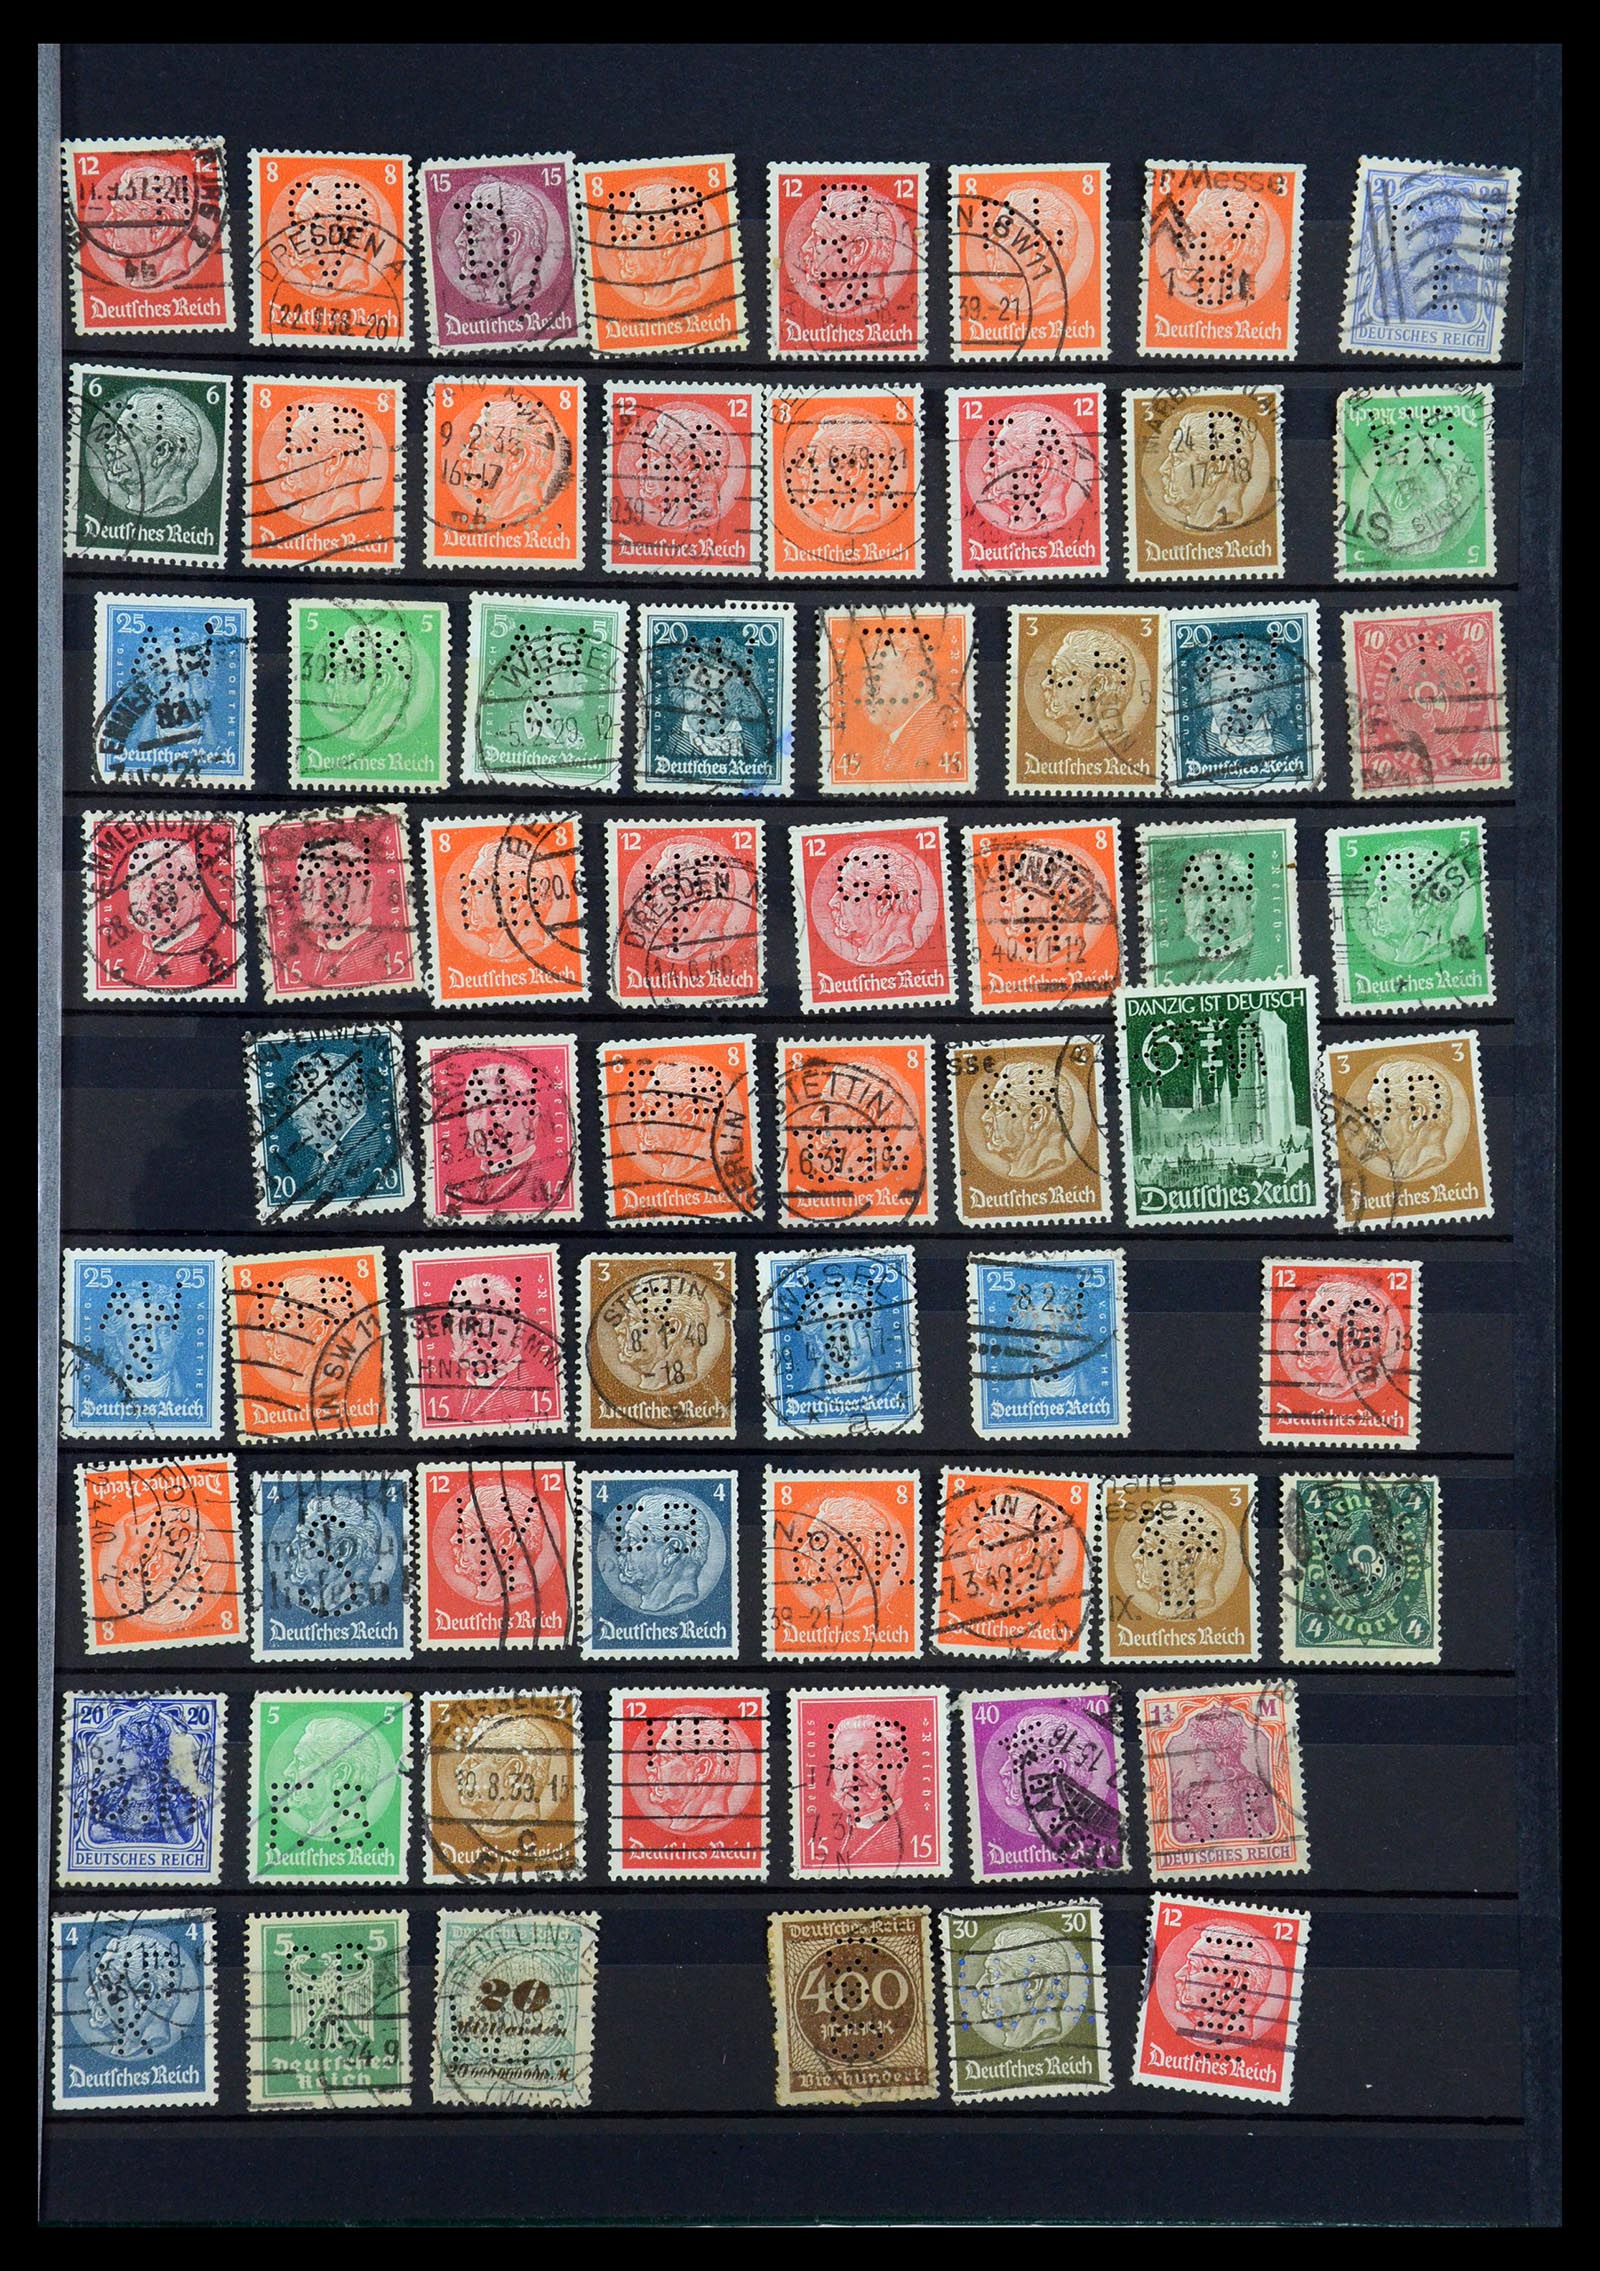 35183 057 - Stamp Collection 35183 German Reich perfins 1880-1945.